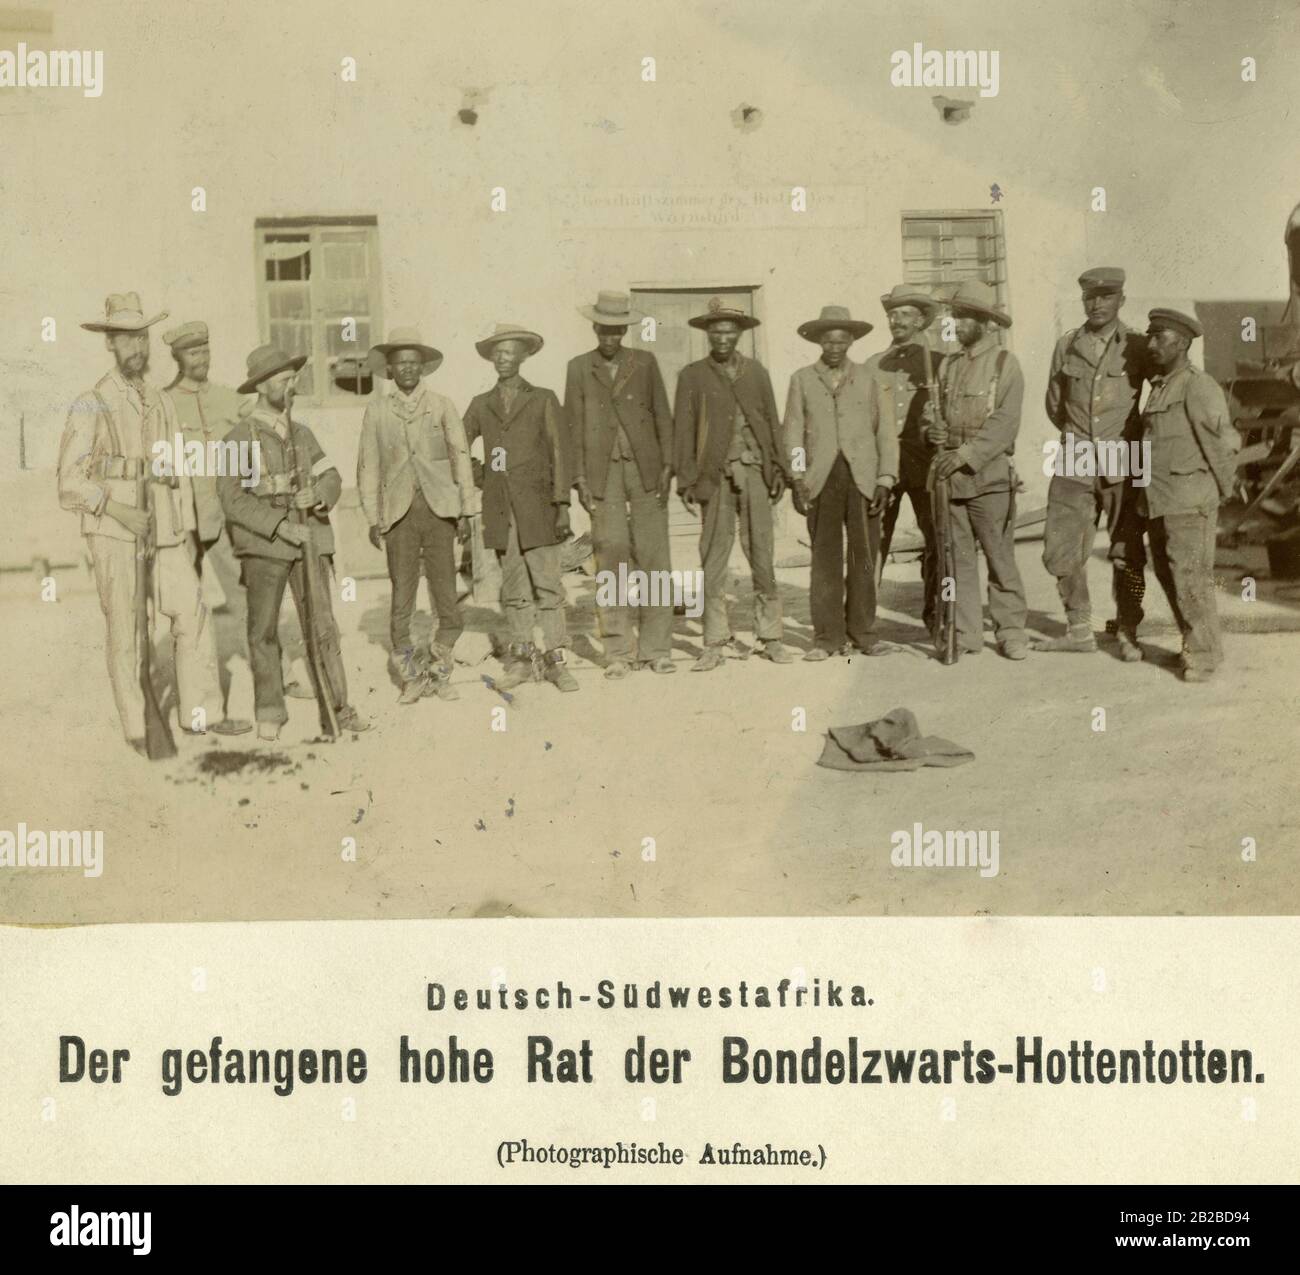 Der gefangengenommene hohe rat aufständischer Einheimischer der Volksgruppe Bondelzwarts gegen die deutsche Besatzung. Stockfoto